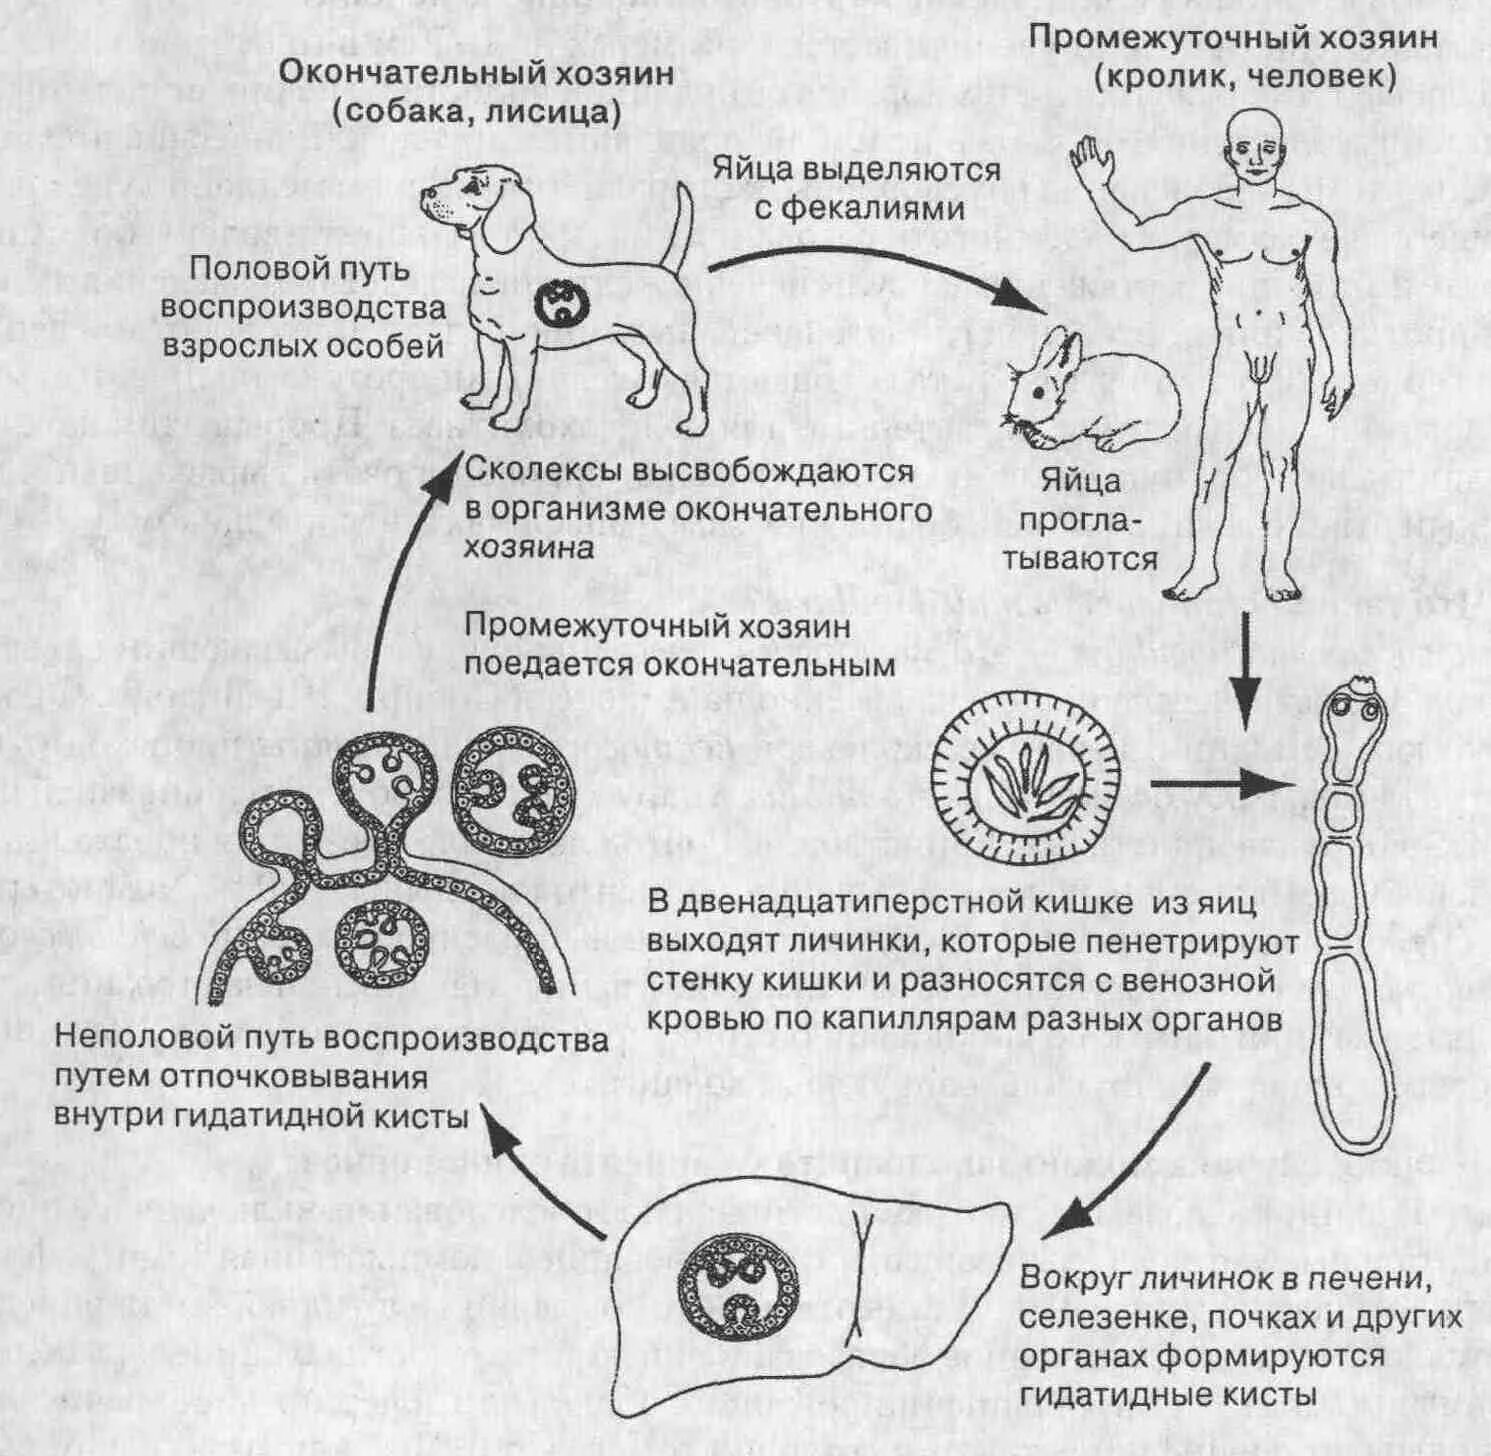 Может ли человек заразиться эхинококком. Цикл развития эхинококка Echinococcus granulosus. Эхинококк Echinococcus granulosus жизненный цикл. Эхинококкоз цикл развития схема. Цикл развития Echinococcus granulosus.